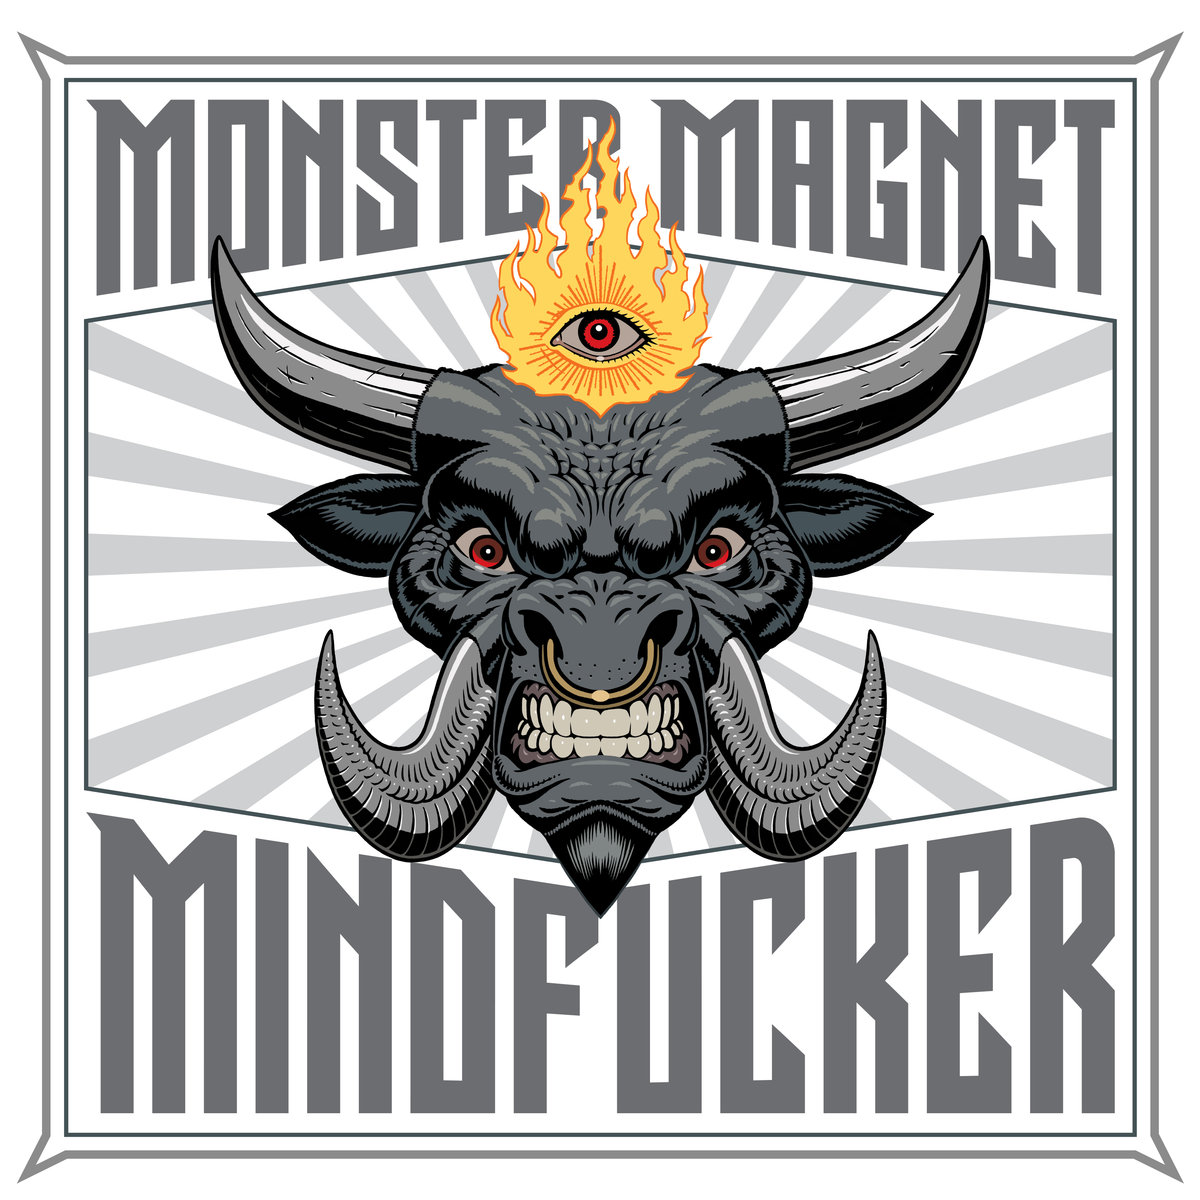 ¿Qué estáis escuchando ahora? - Página 17 Monster-magnet-mindfucker